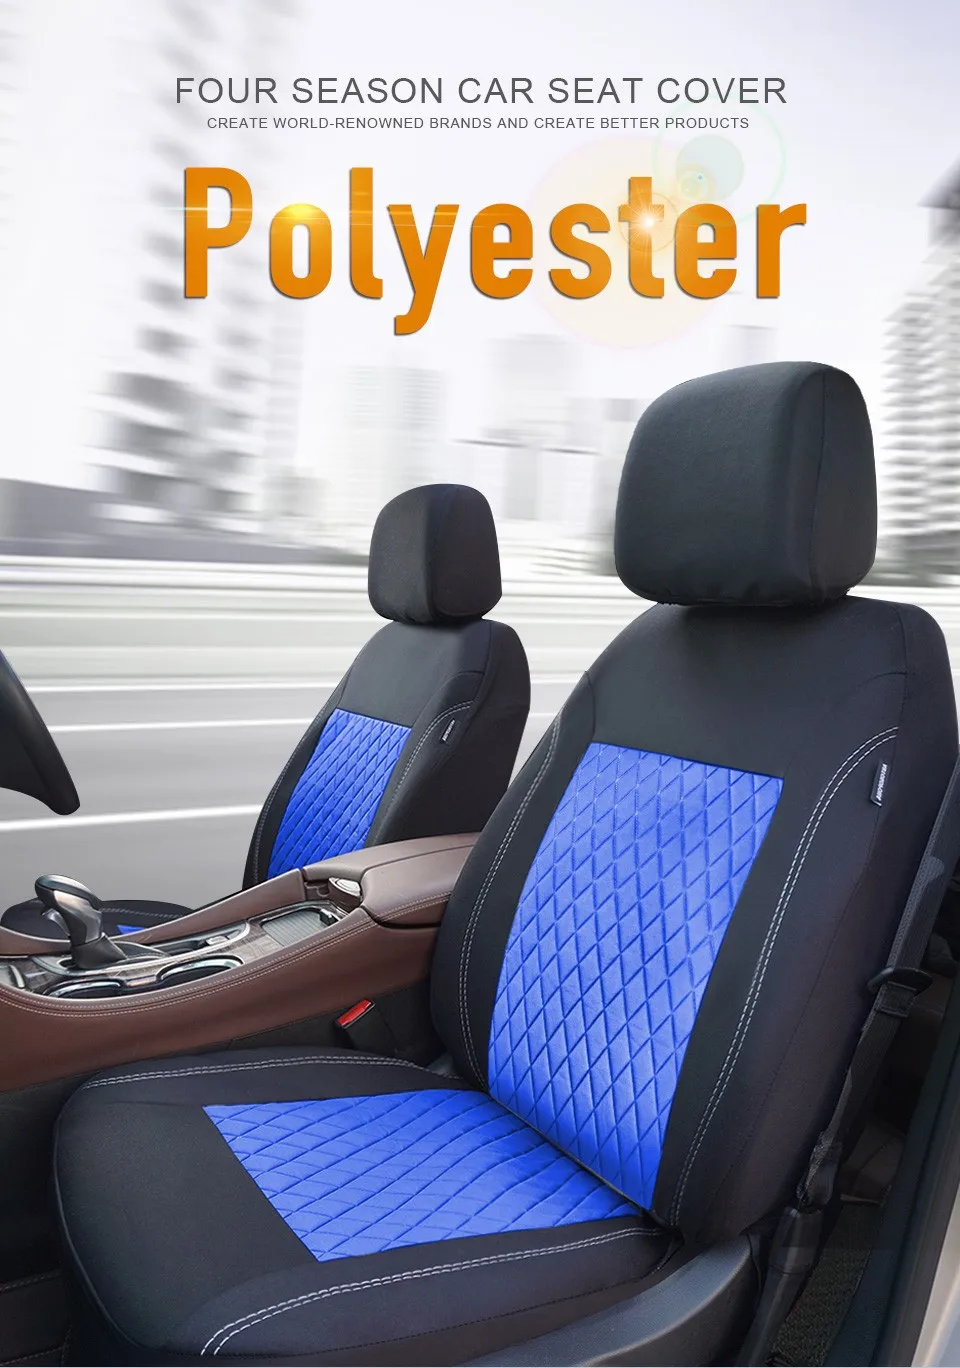 Универсальный чехол для автомобильного сиденья подходит для большинства автомобилей, брендовый чехол для автомобильного сиденья, защитный чехол для автомобильного сиденья, 3 цвета